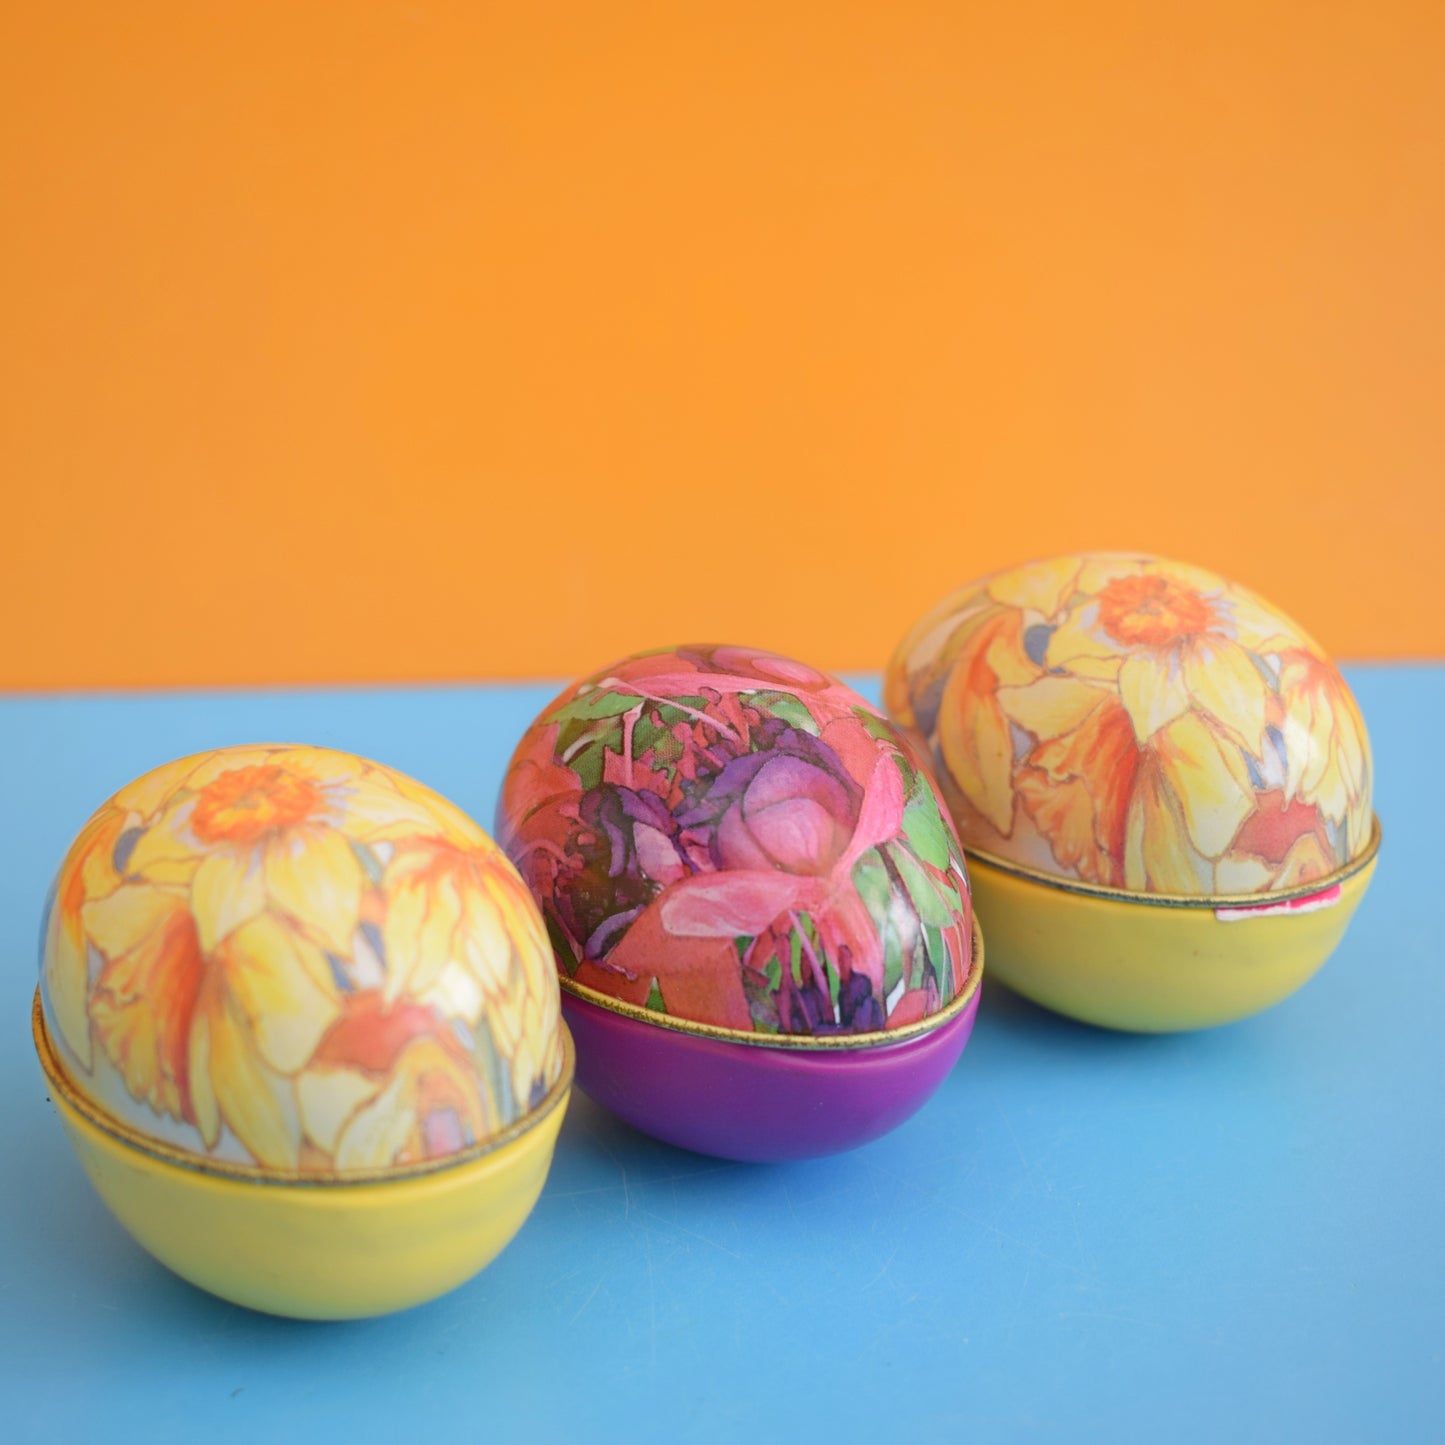 Vintage 1980s Egg Shaped Tins / Soap - Floral